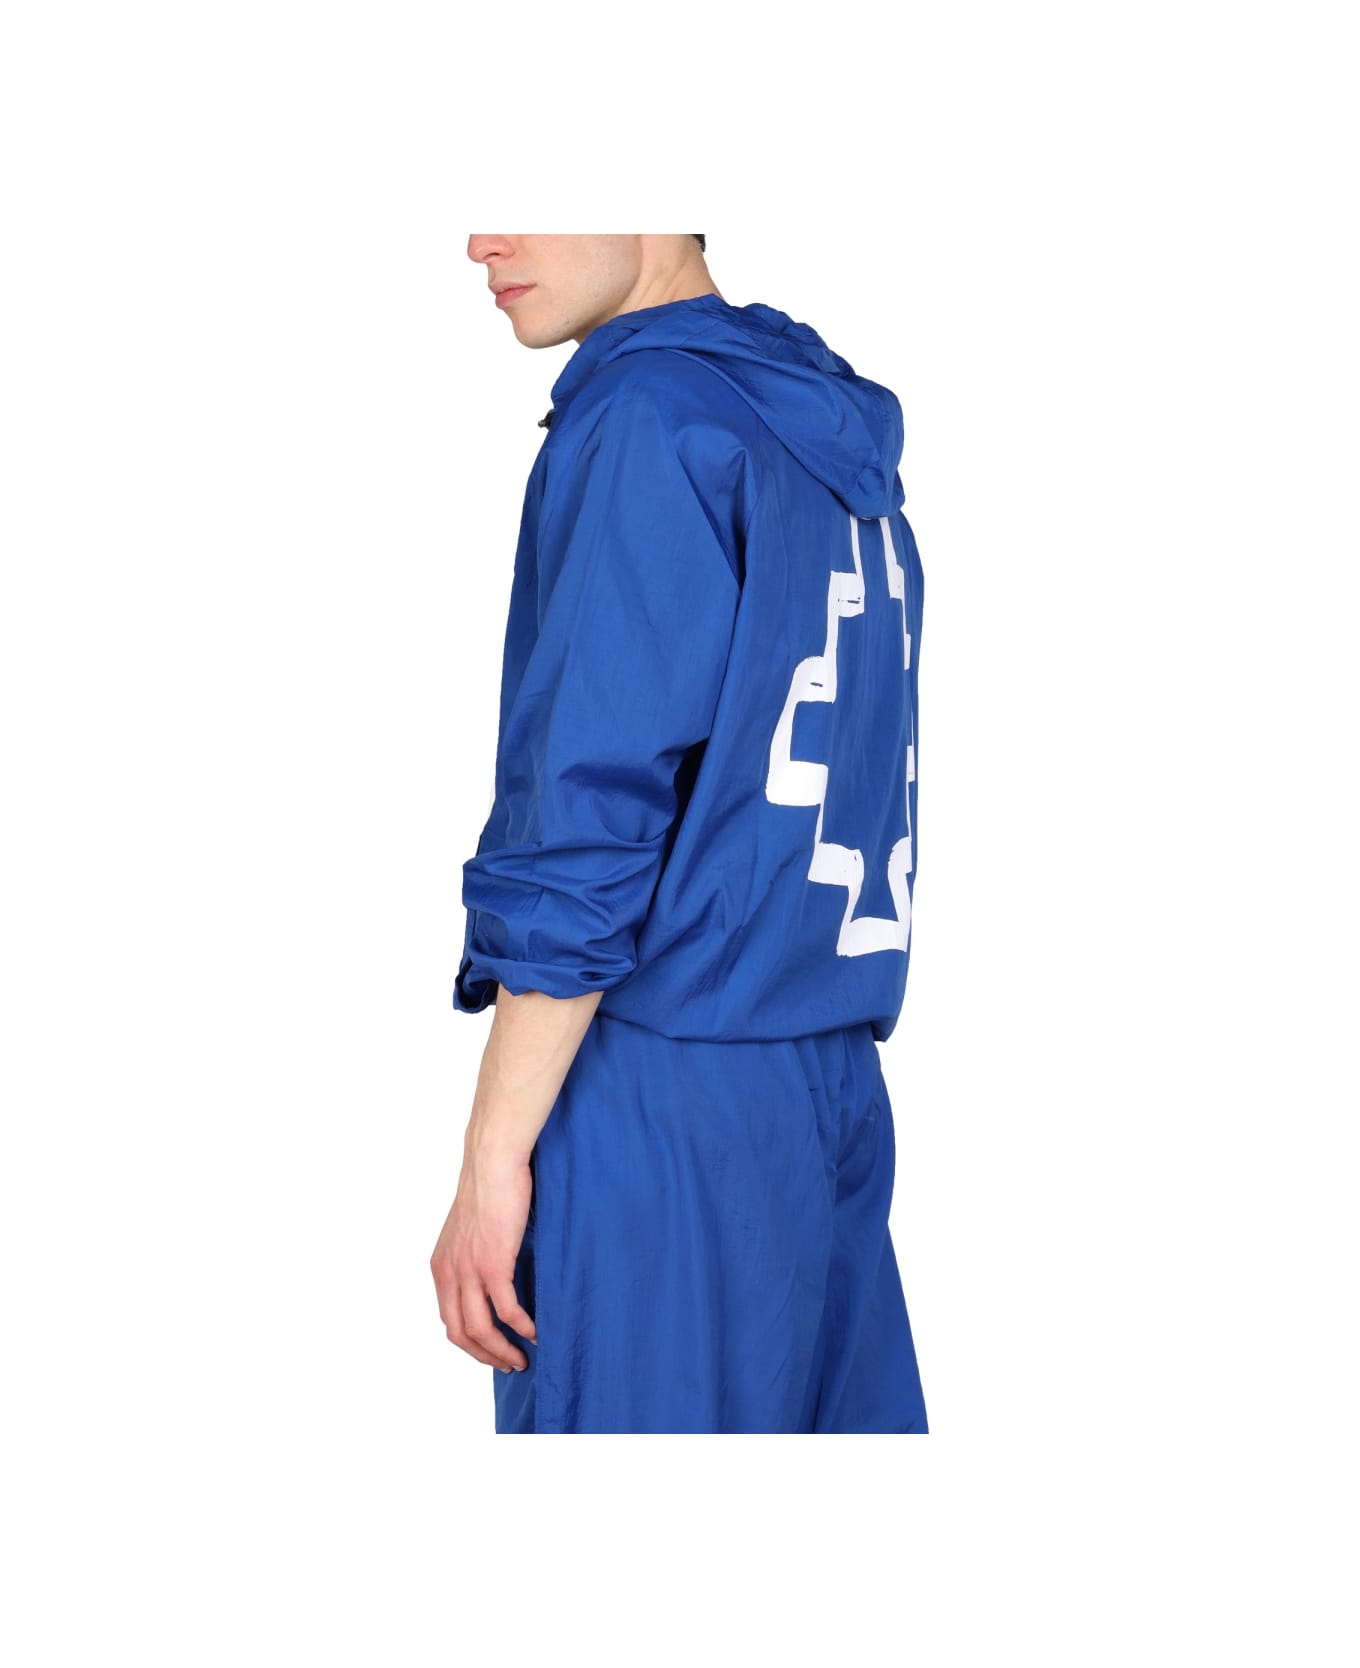 Marcelo Burlon Cross Print Windbreaker Jacket - BLUE ジャケット